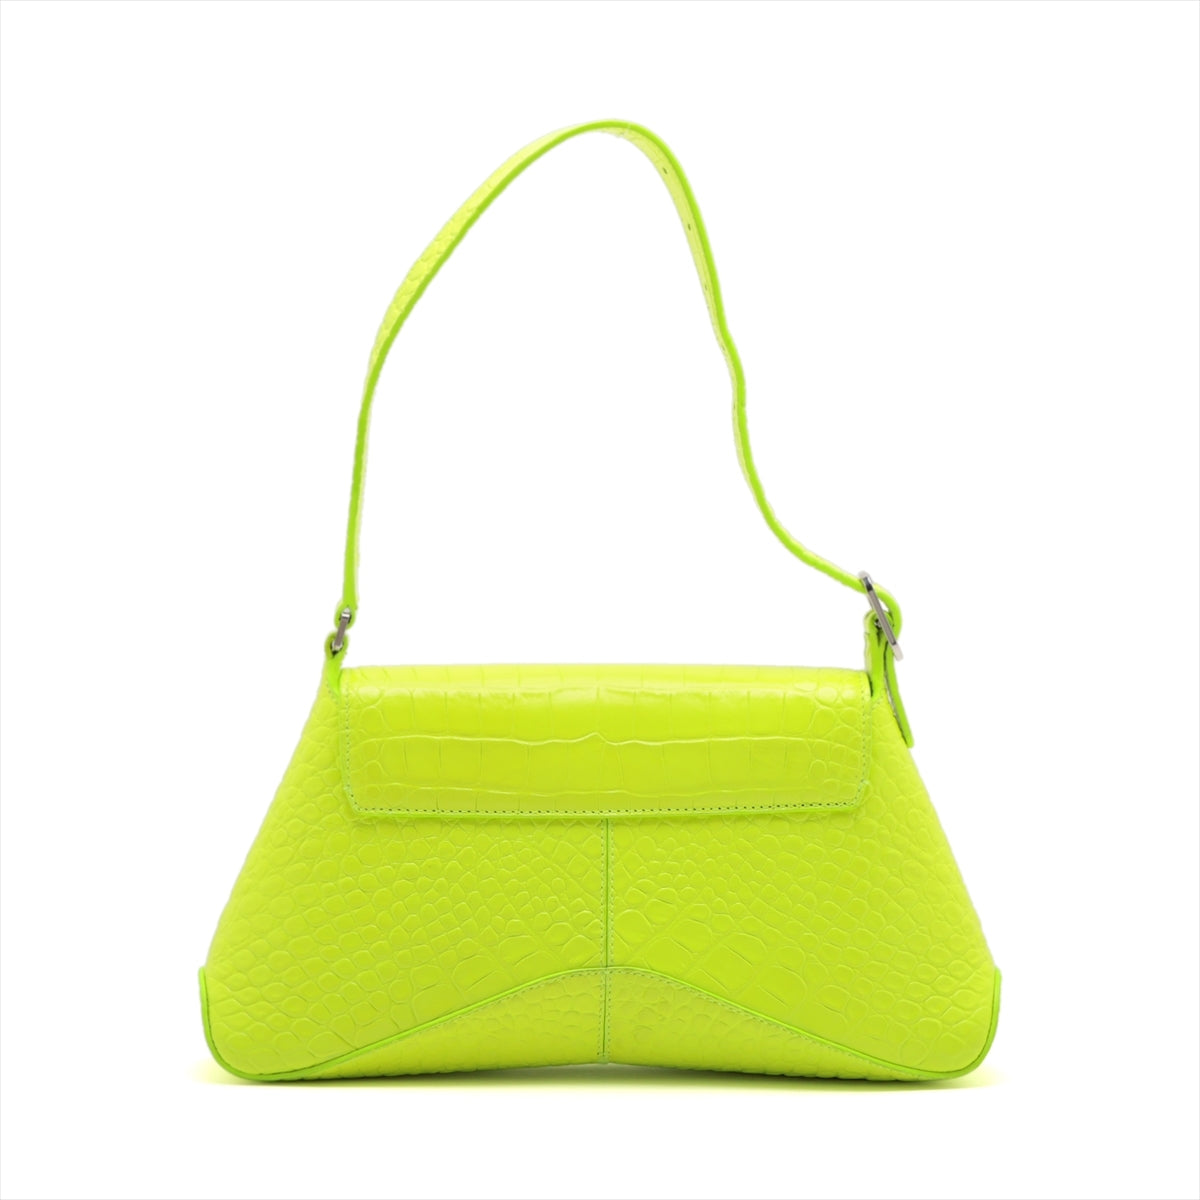 Balenciaga Moc croc Shoulder bag Yellow 695648